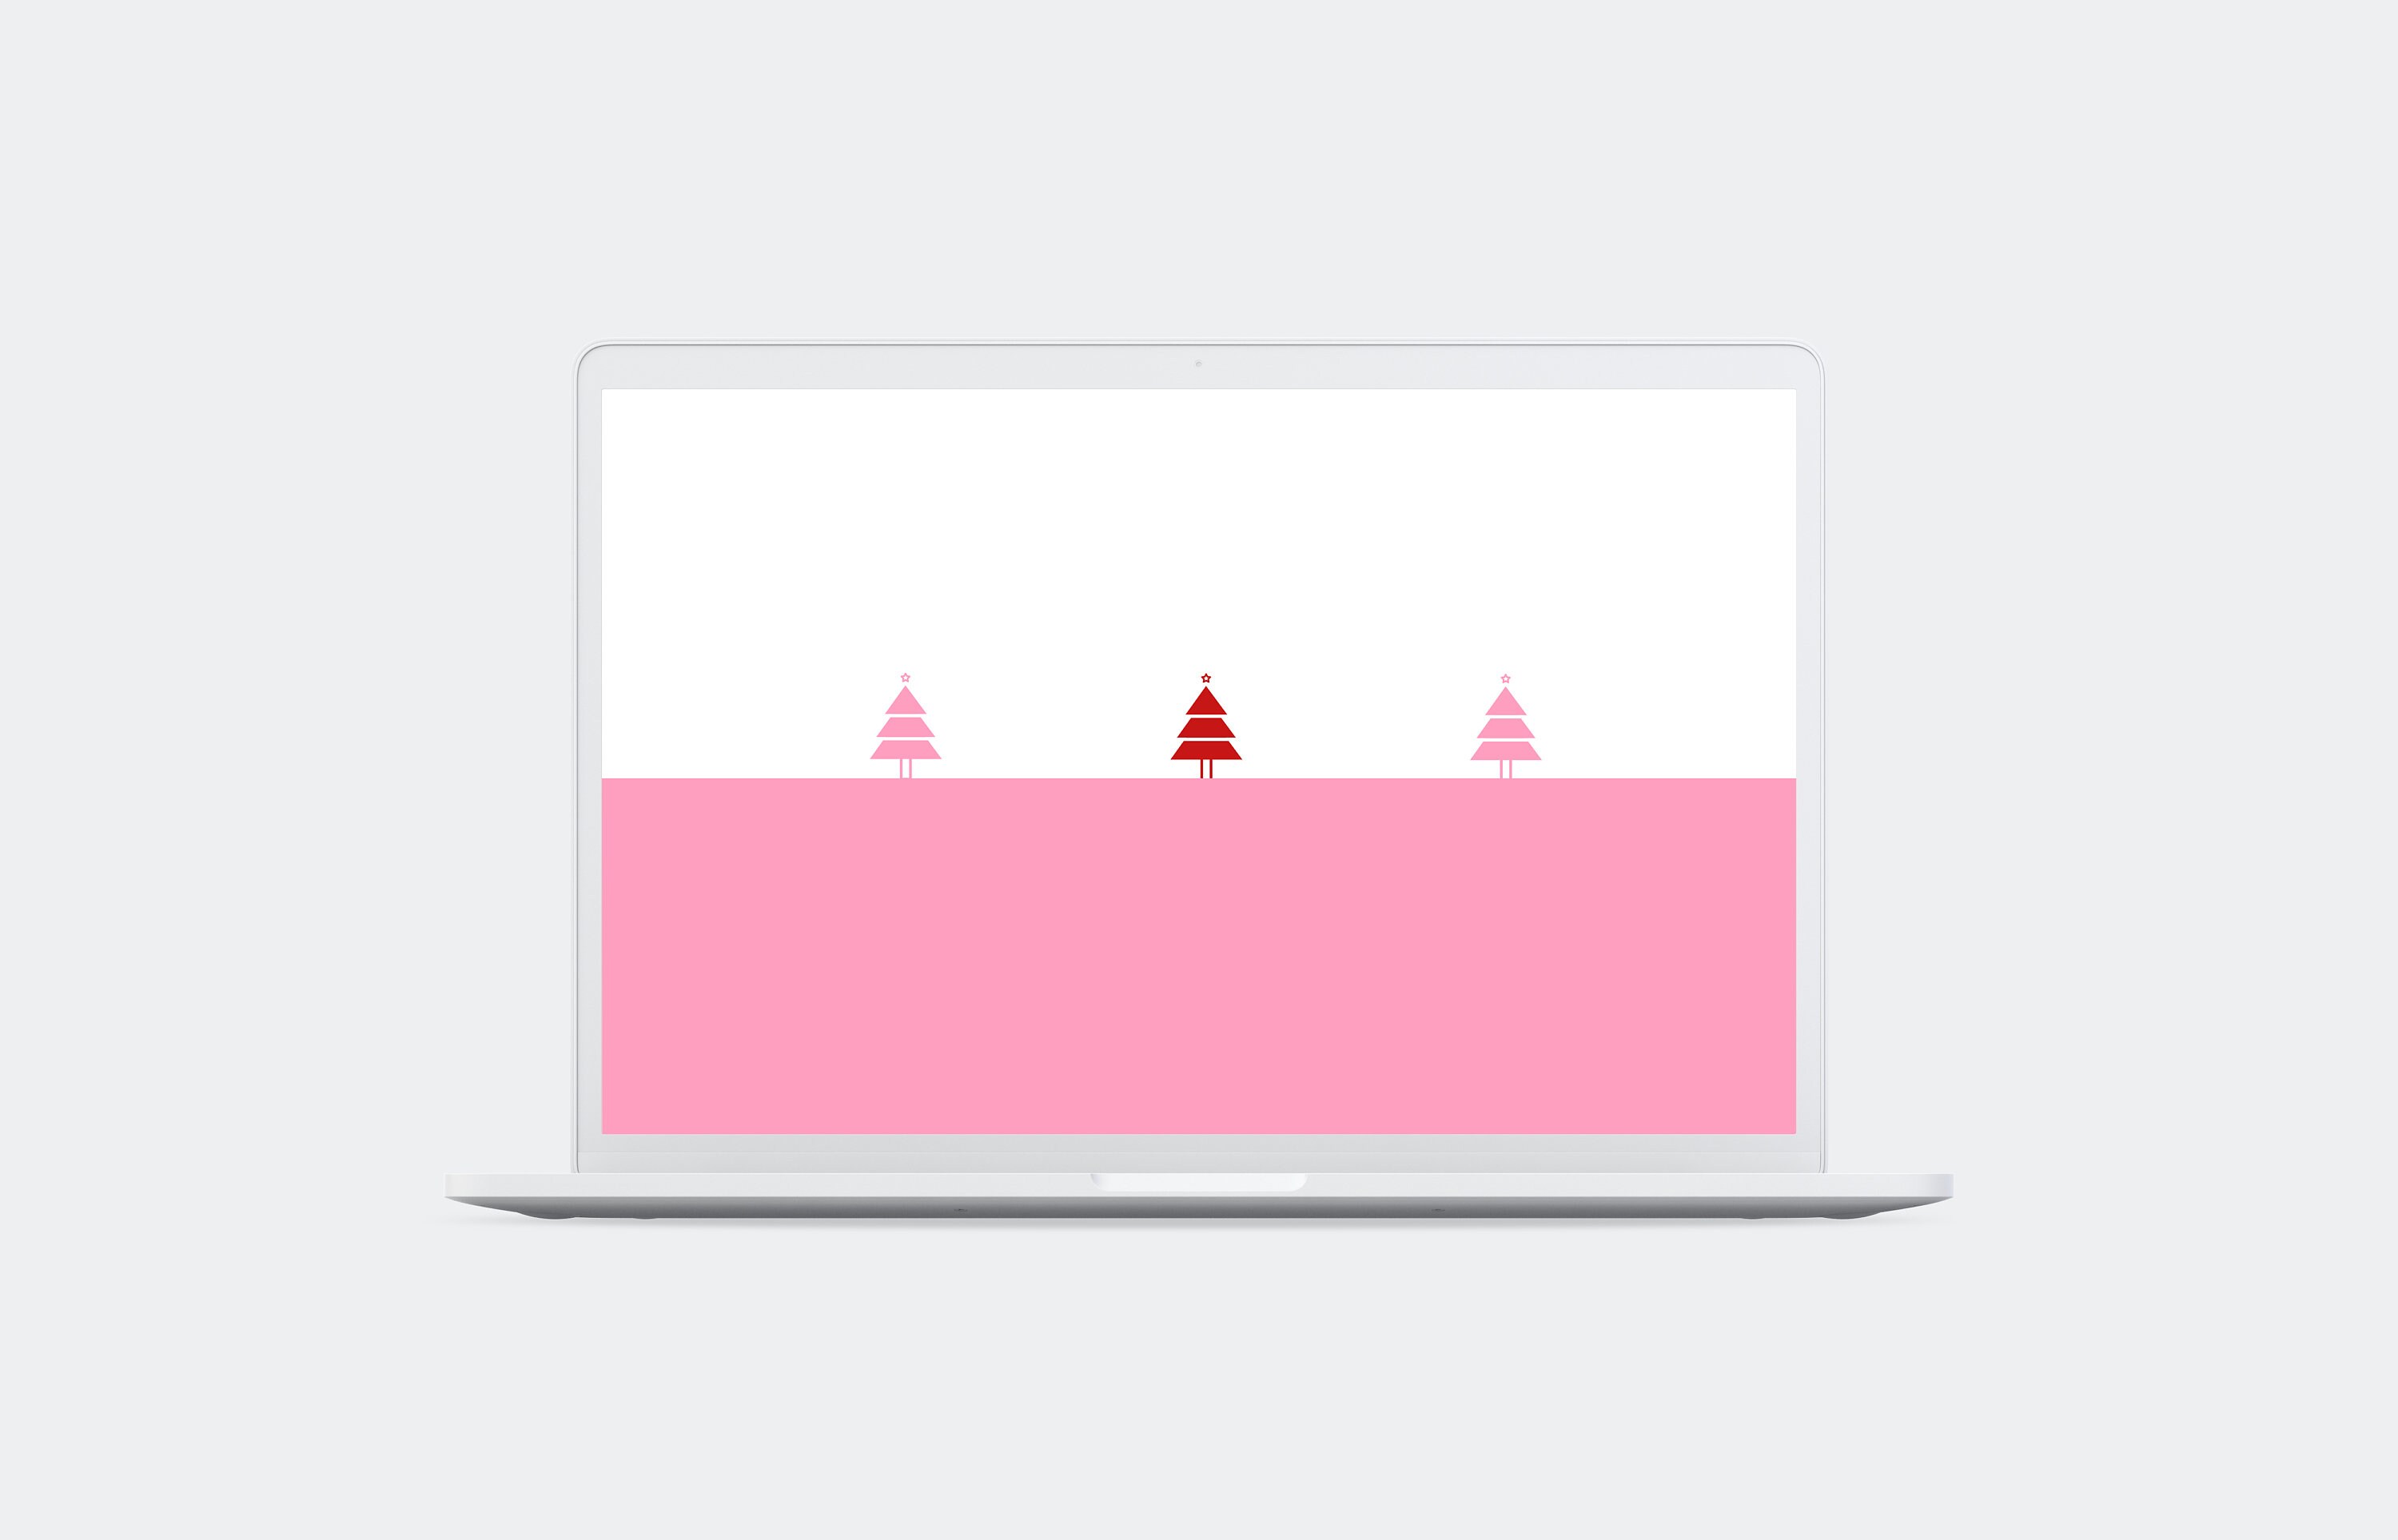 Nếu bạn đang tìm kiếm một hình nền Giáng sinh đơn giản nhưng tinh tế thì đây chính là sự lựa chọn hoàn hảo cho bạn. Bạn sẽ cảm thấy rất yên tĩnh nhưng vẫn không kém phần đầy màu sắc với các hình ảnh nhỏ nhắn liên quan đến Giáng sinh. Hãy cập nhật ngay để trang trí desktop của mình! 